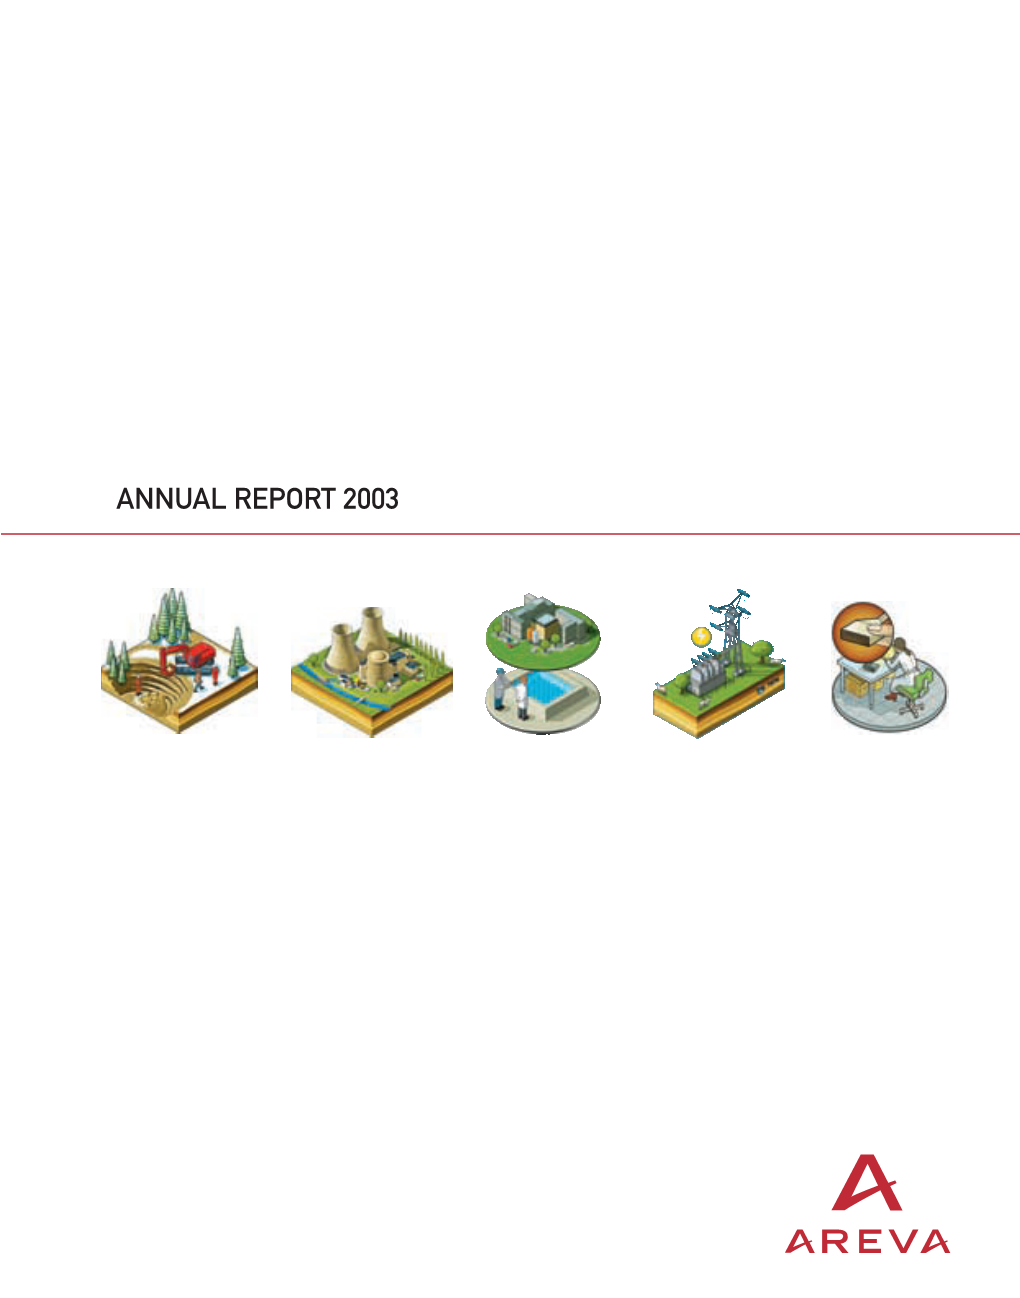 ANNUAL REPORT 2003 Annual Report 2003